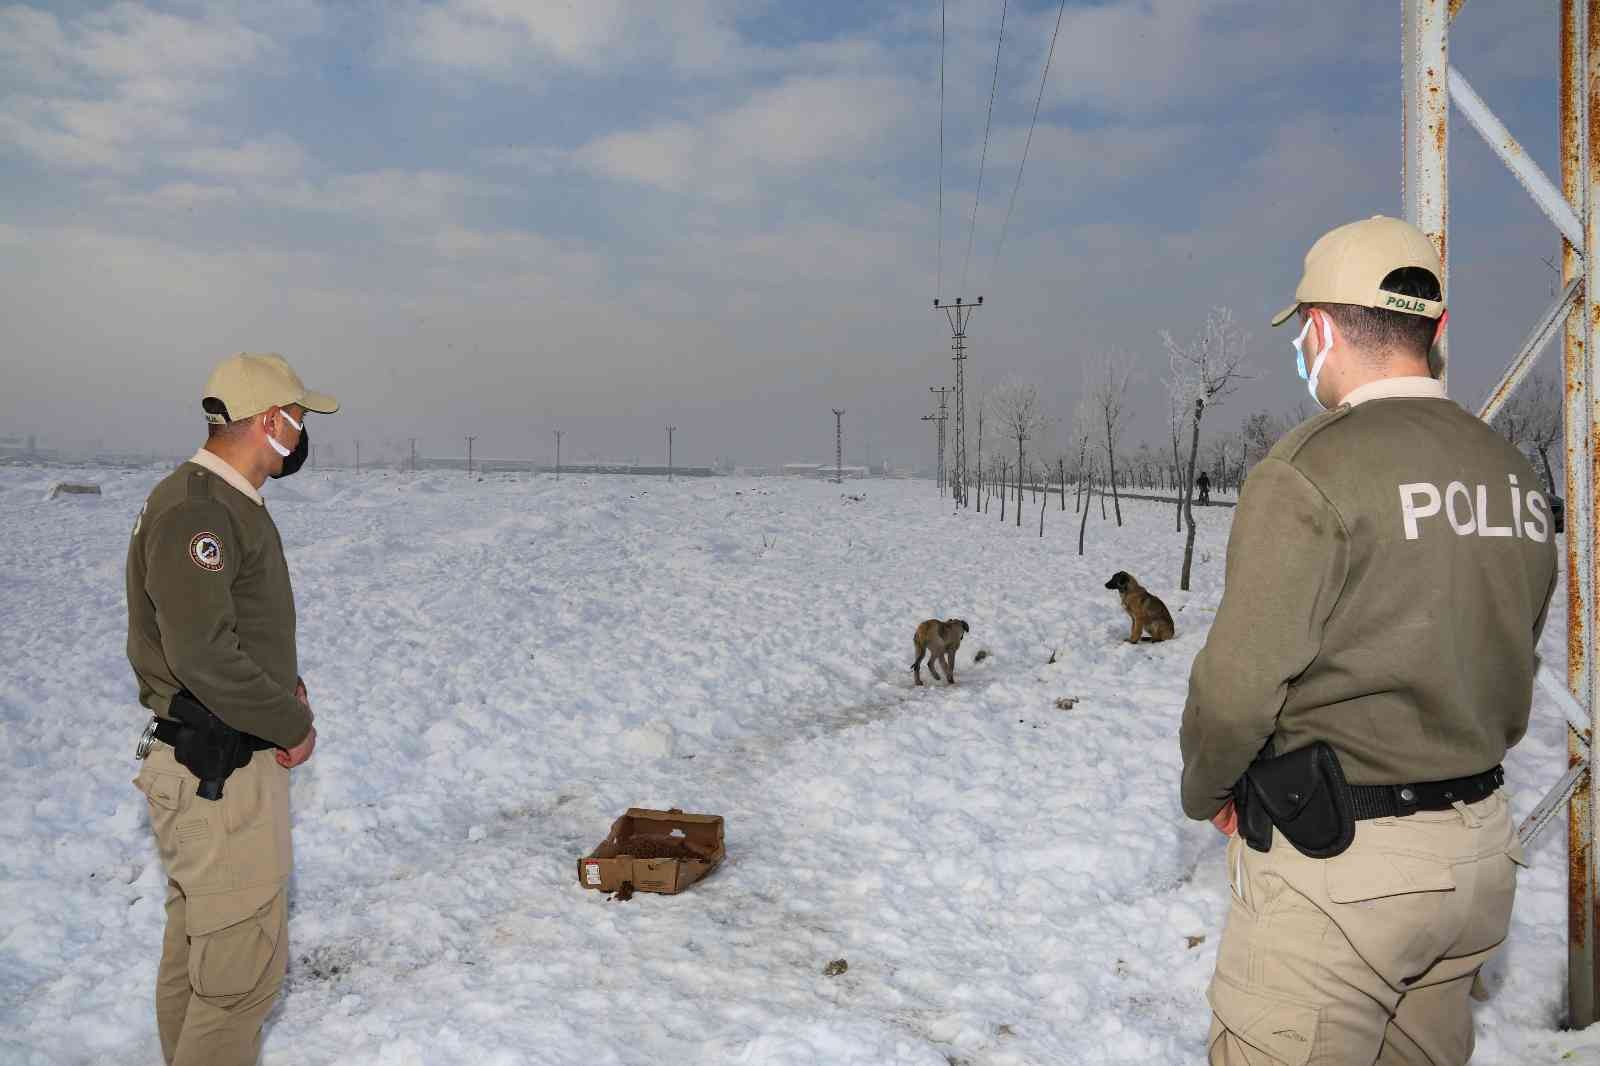 Konya’da hayvanları koruma polisleri, bin 45 ihbara cevap verdi #konya